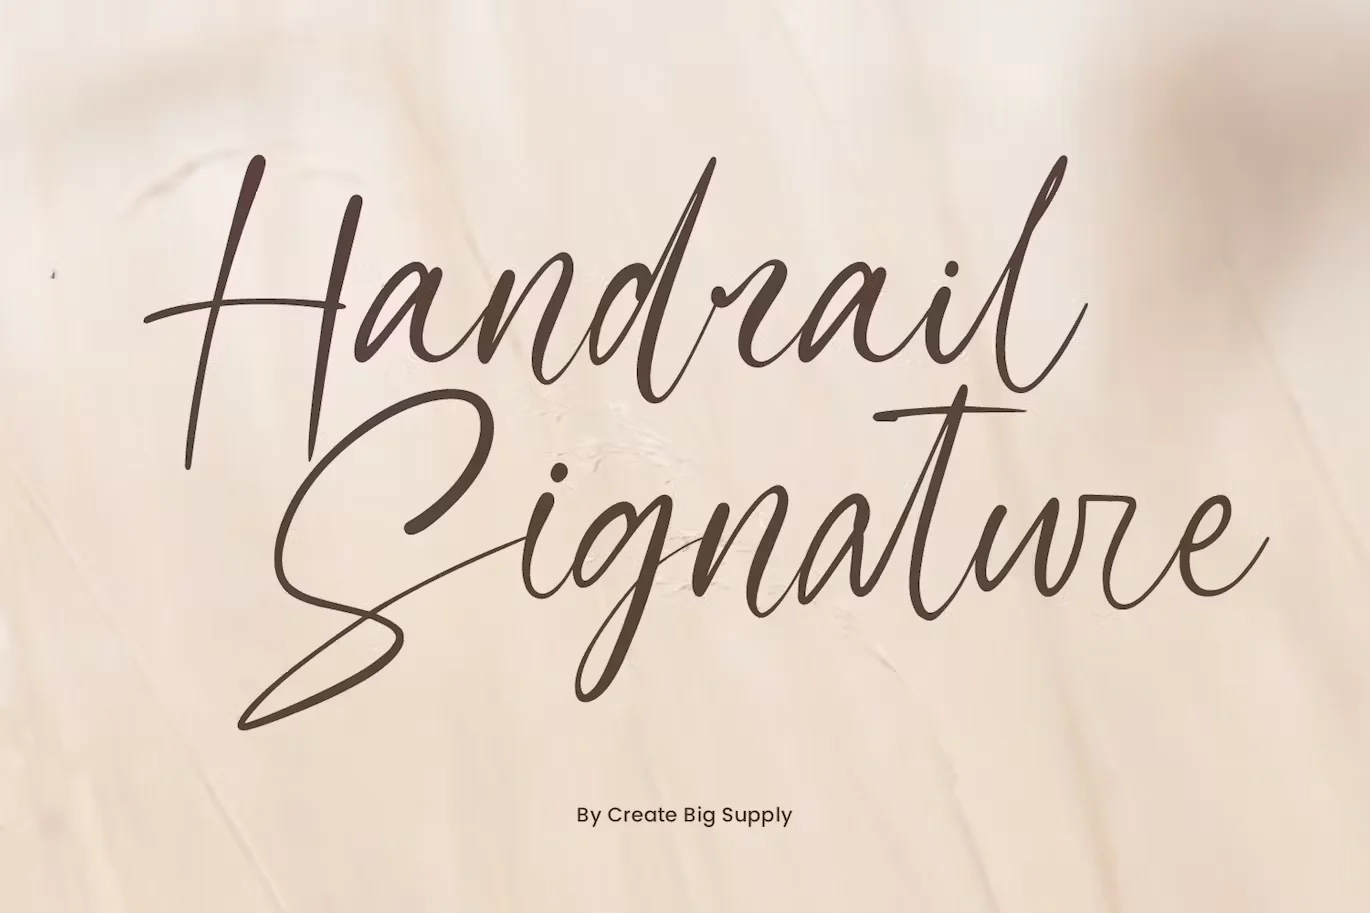 Handrail Signature